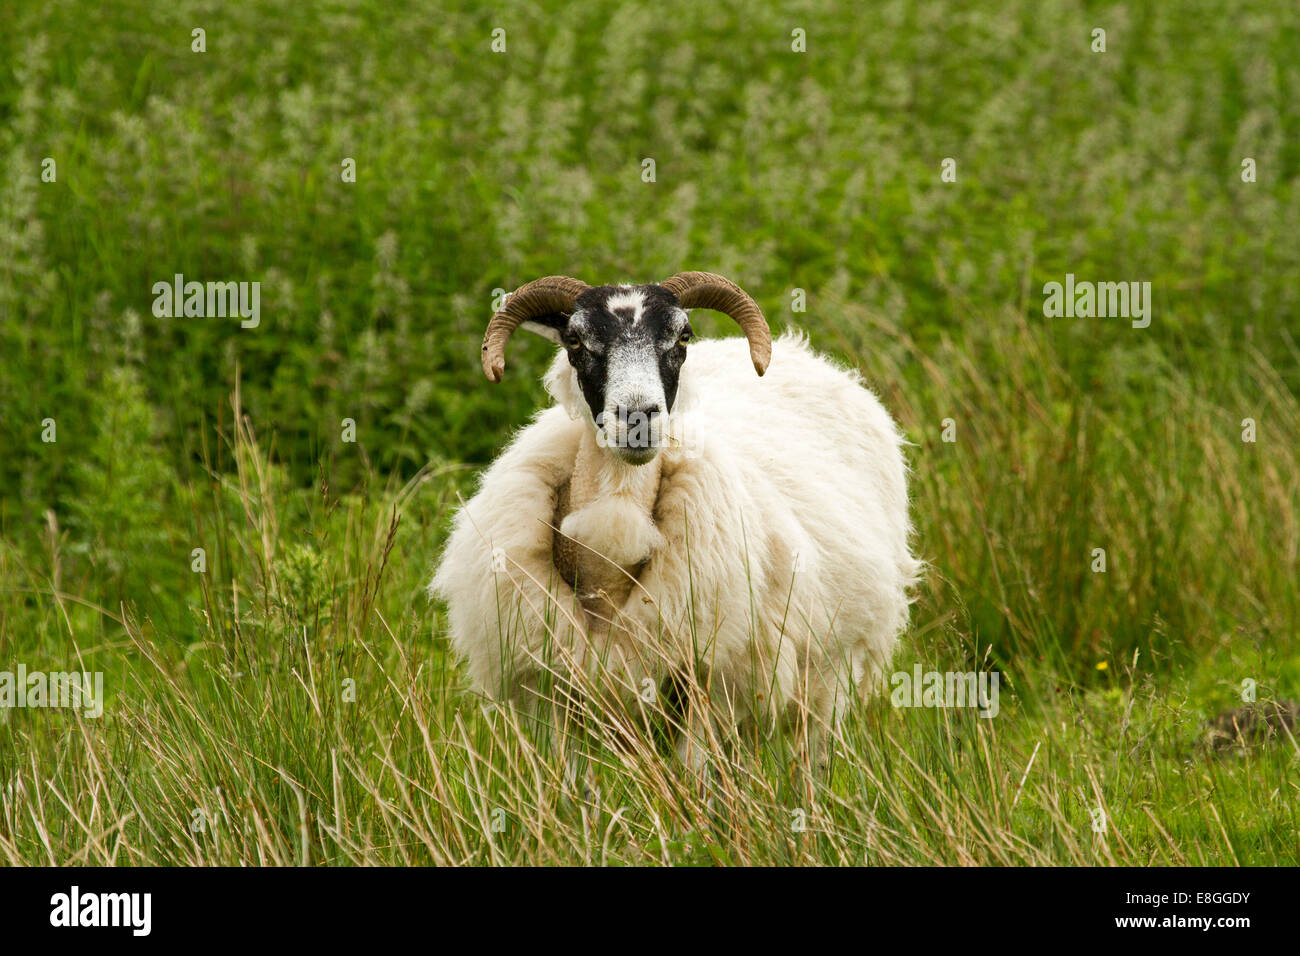 Moutons Swaledale, une ancienne race, avec la laine blanche épaisse, face noire, et cornes courbes parmi l'herbe émeraude, Lake District, Cumbria, Angleterre Banque D'Images